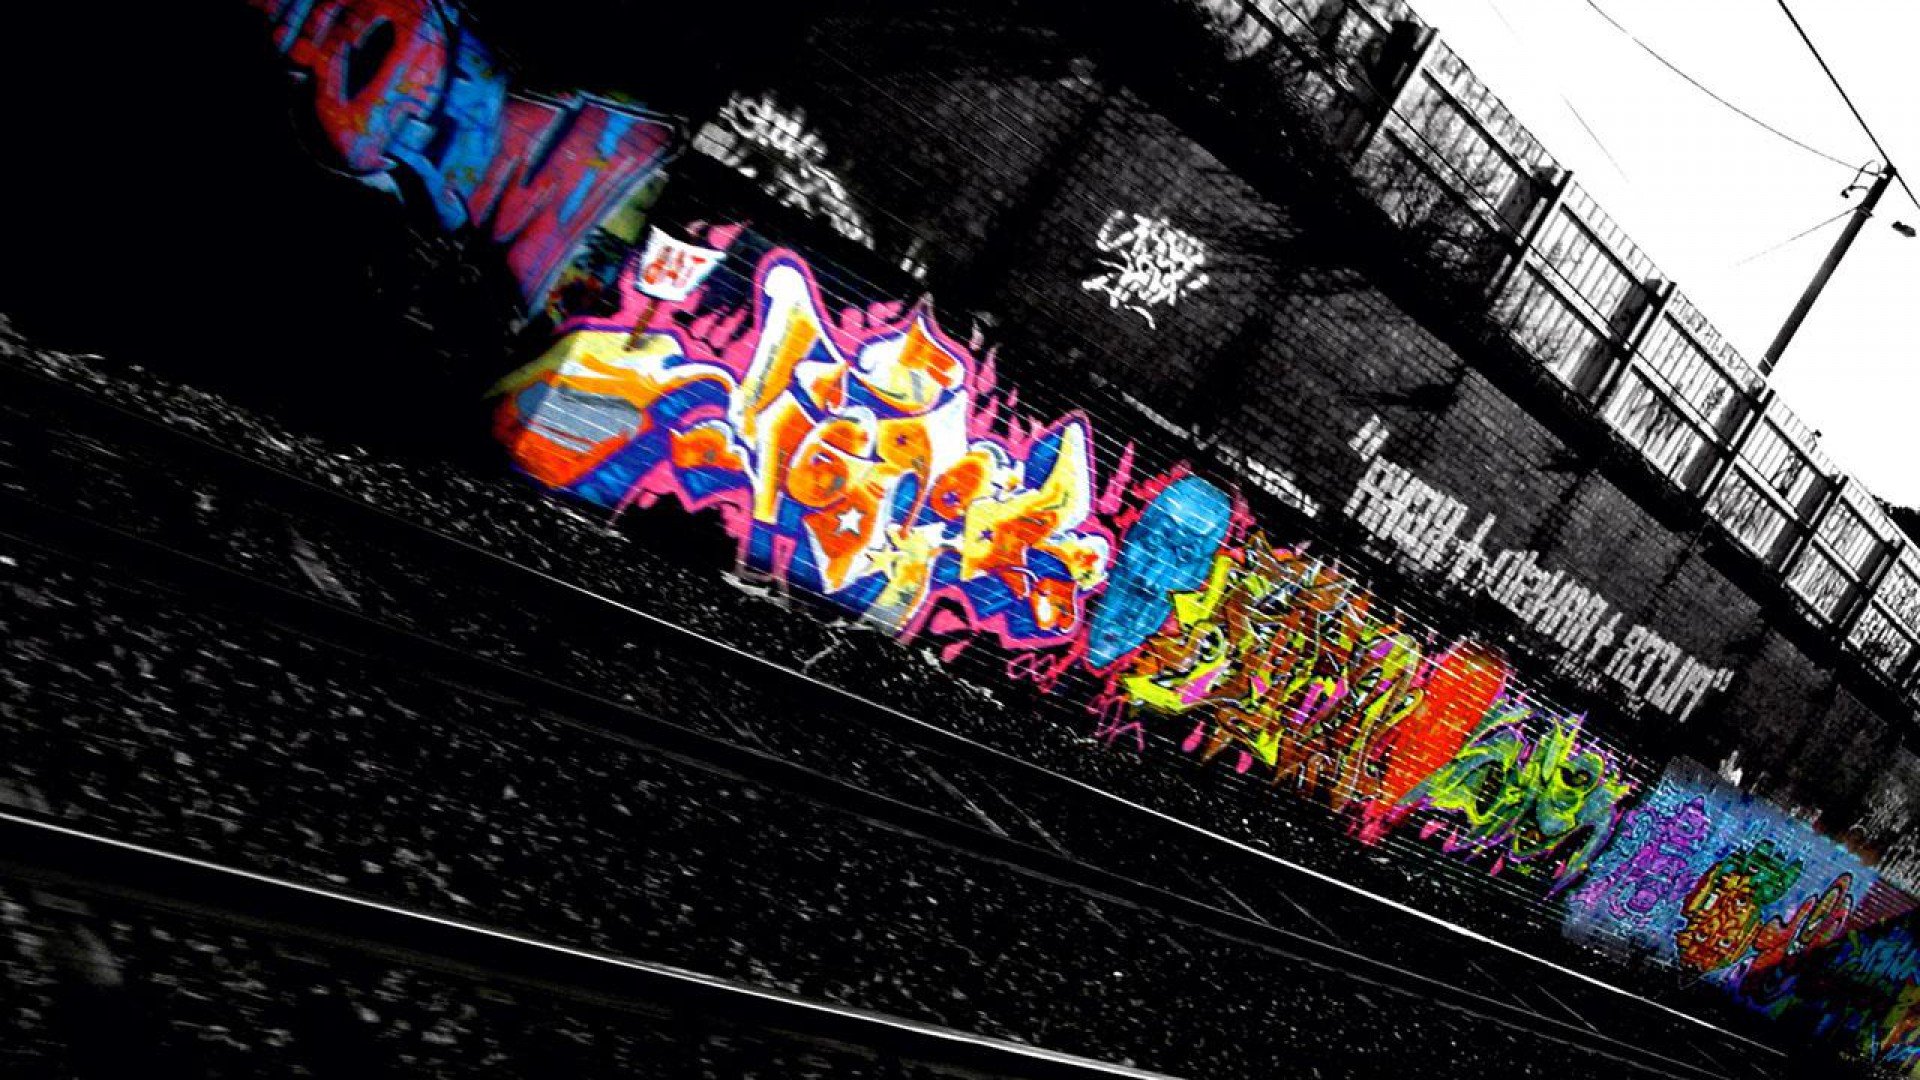 Graffiti Wallpaper Image For Laptop Desktops